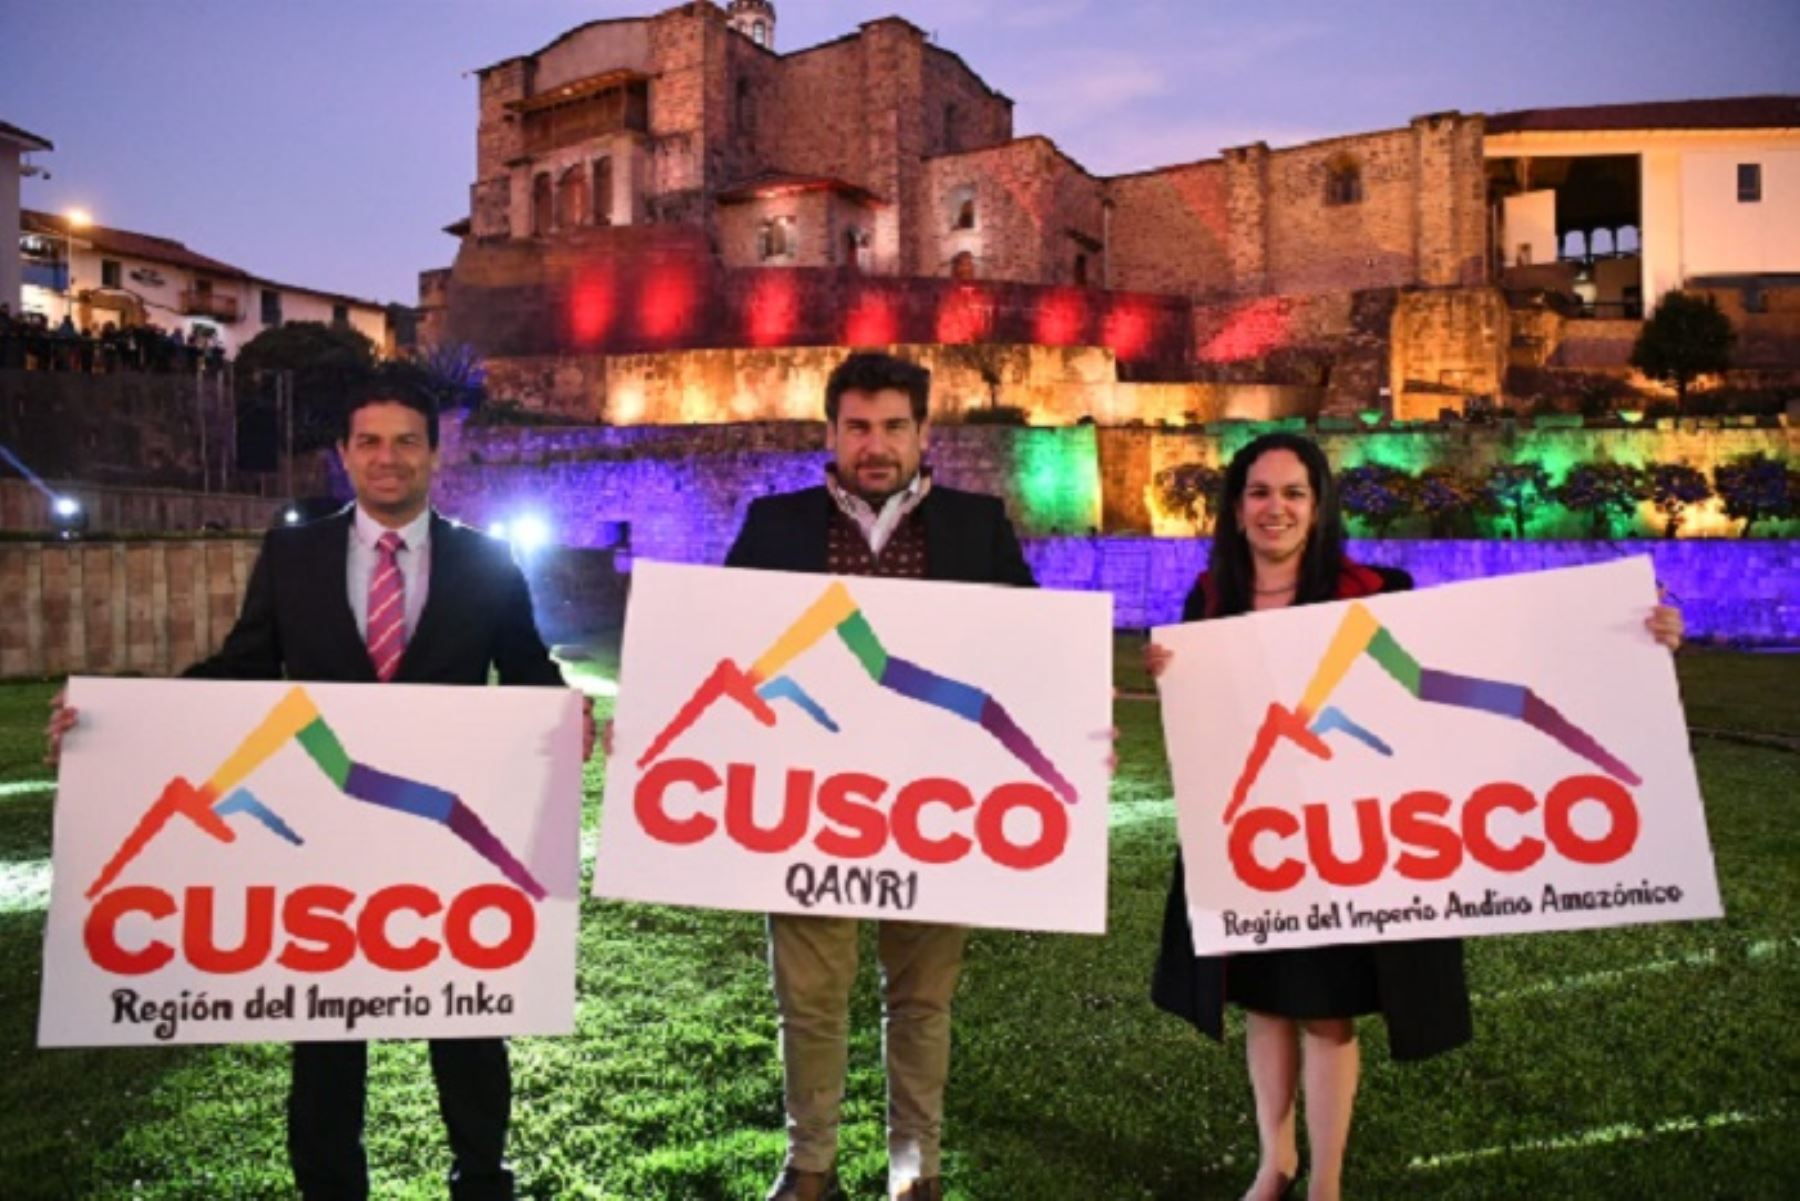 Las  marcas de certificación son: Cusco región del imperio andino amazónico, Cusco región del imperio Inka y Cusco Qanri.